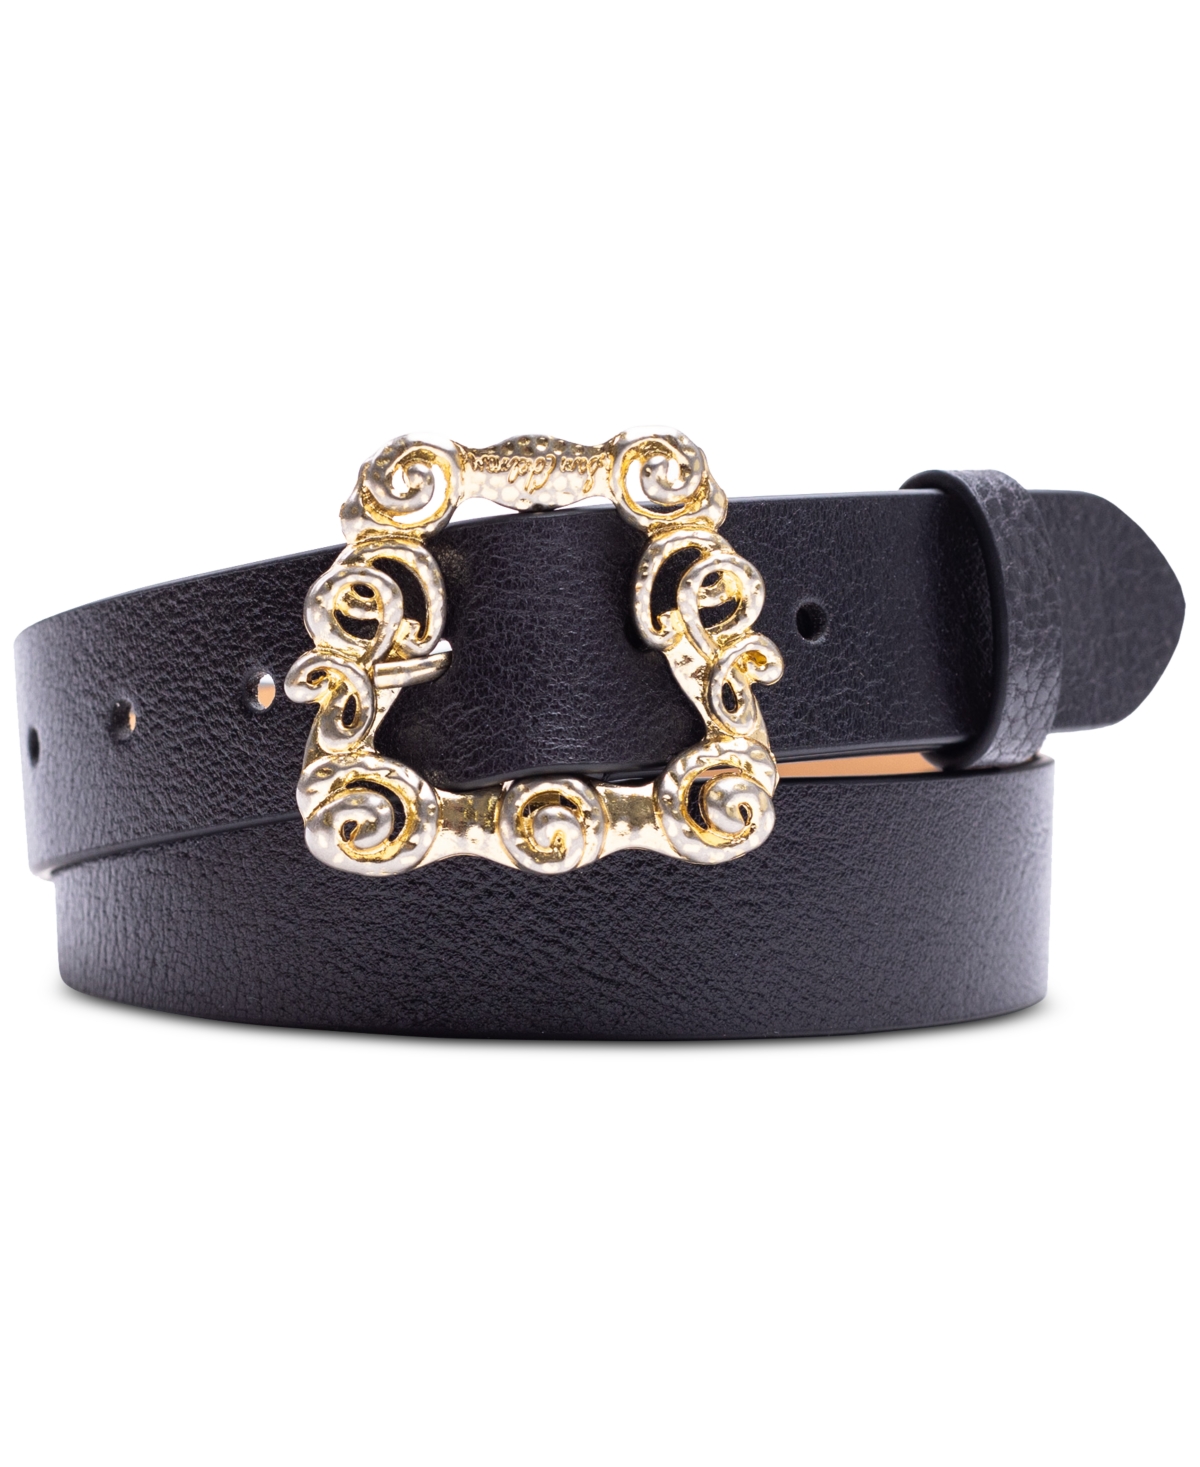 Women's Ornate Embellished Buckle Leather Belt - Black